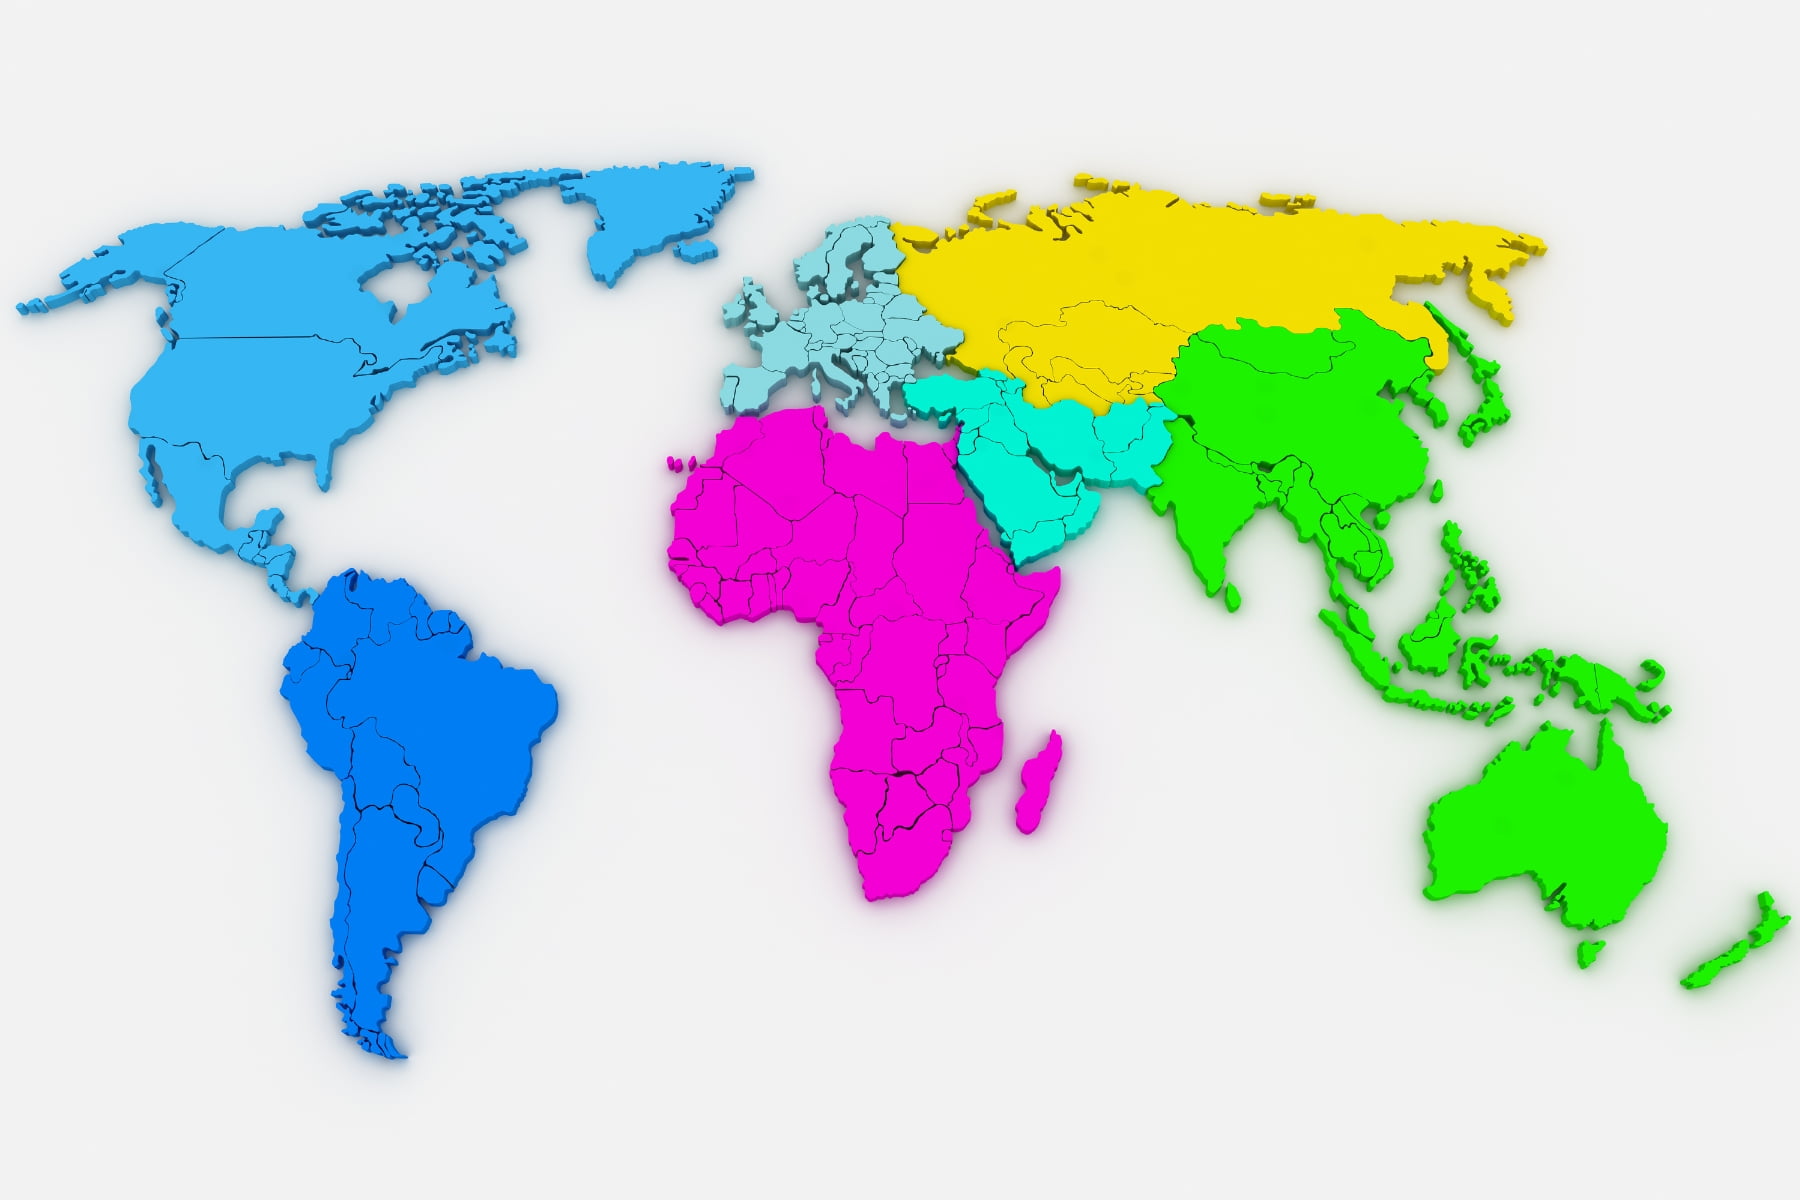 Identifique no mapa mundo político, o continente europeu e os